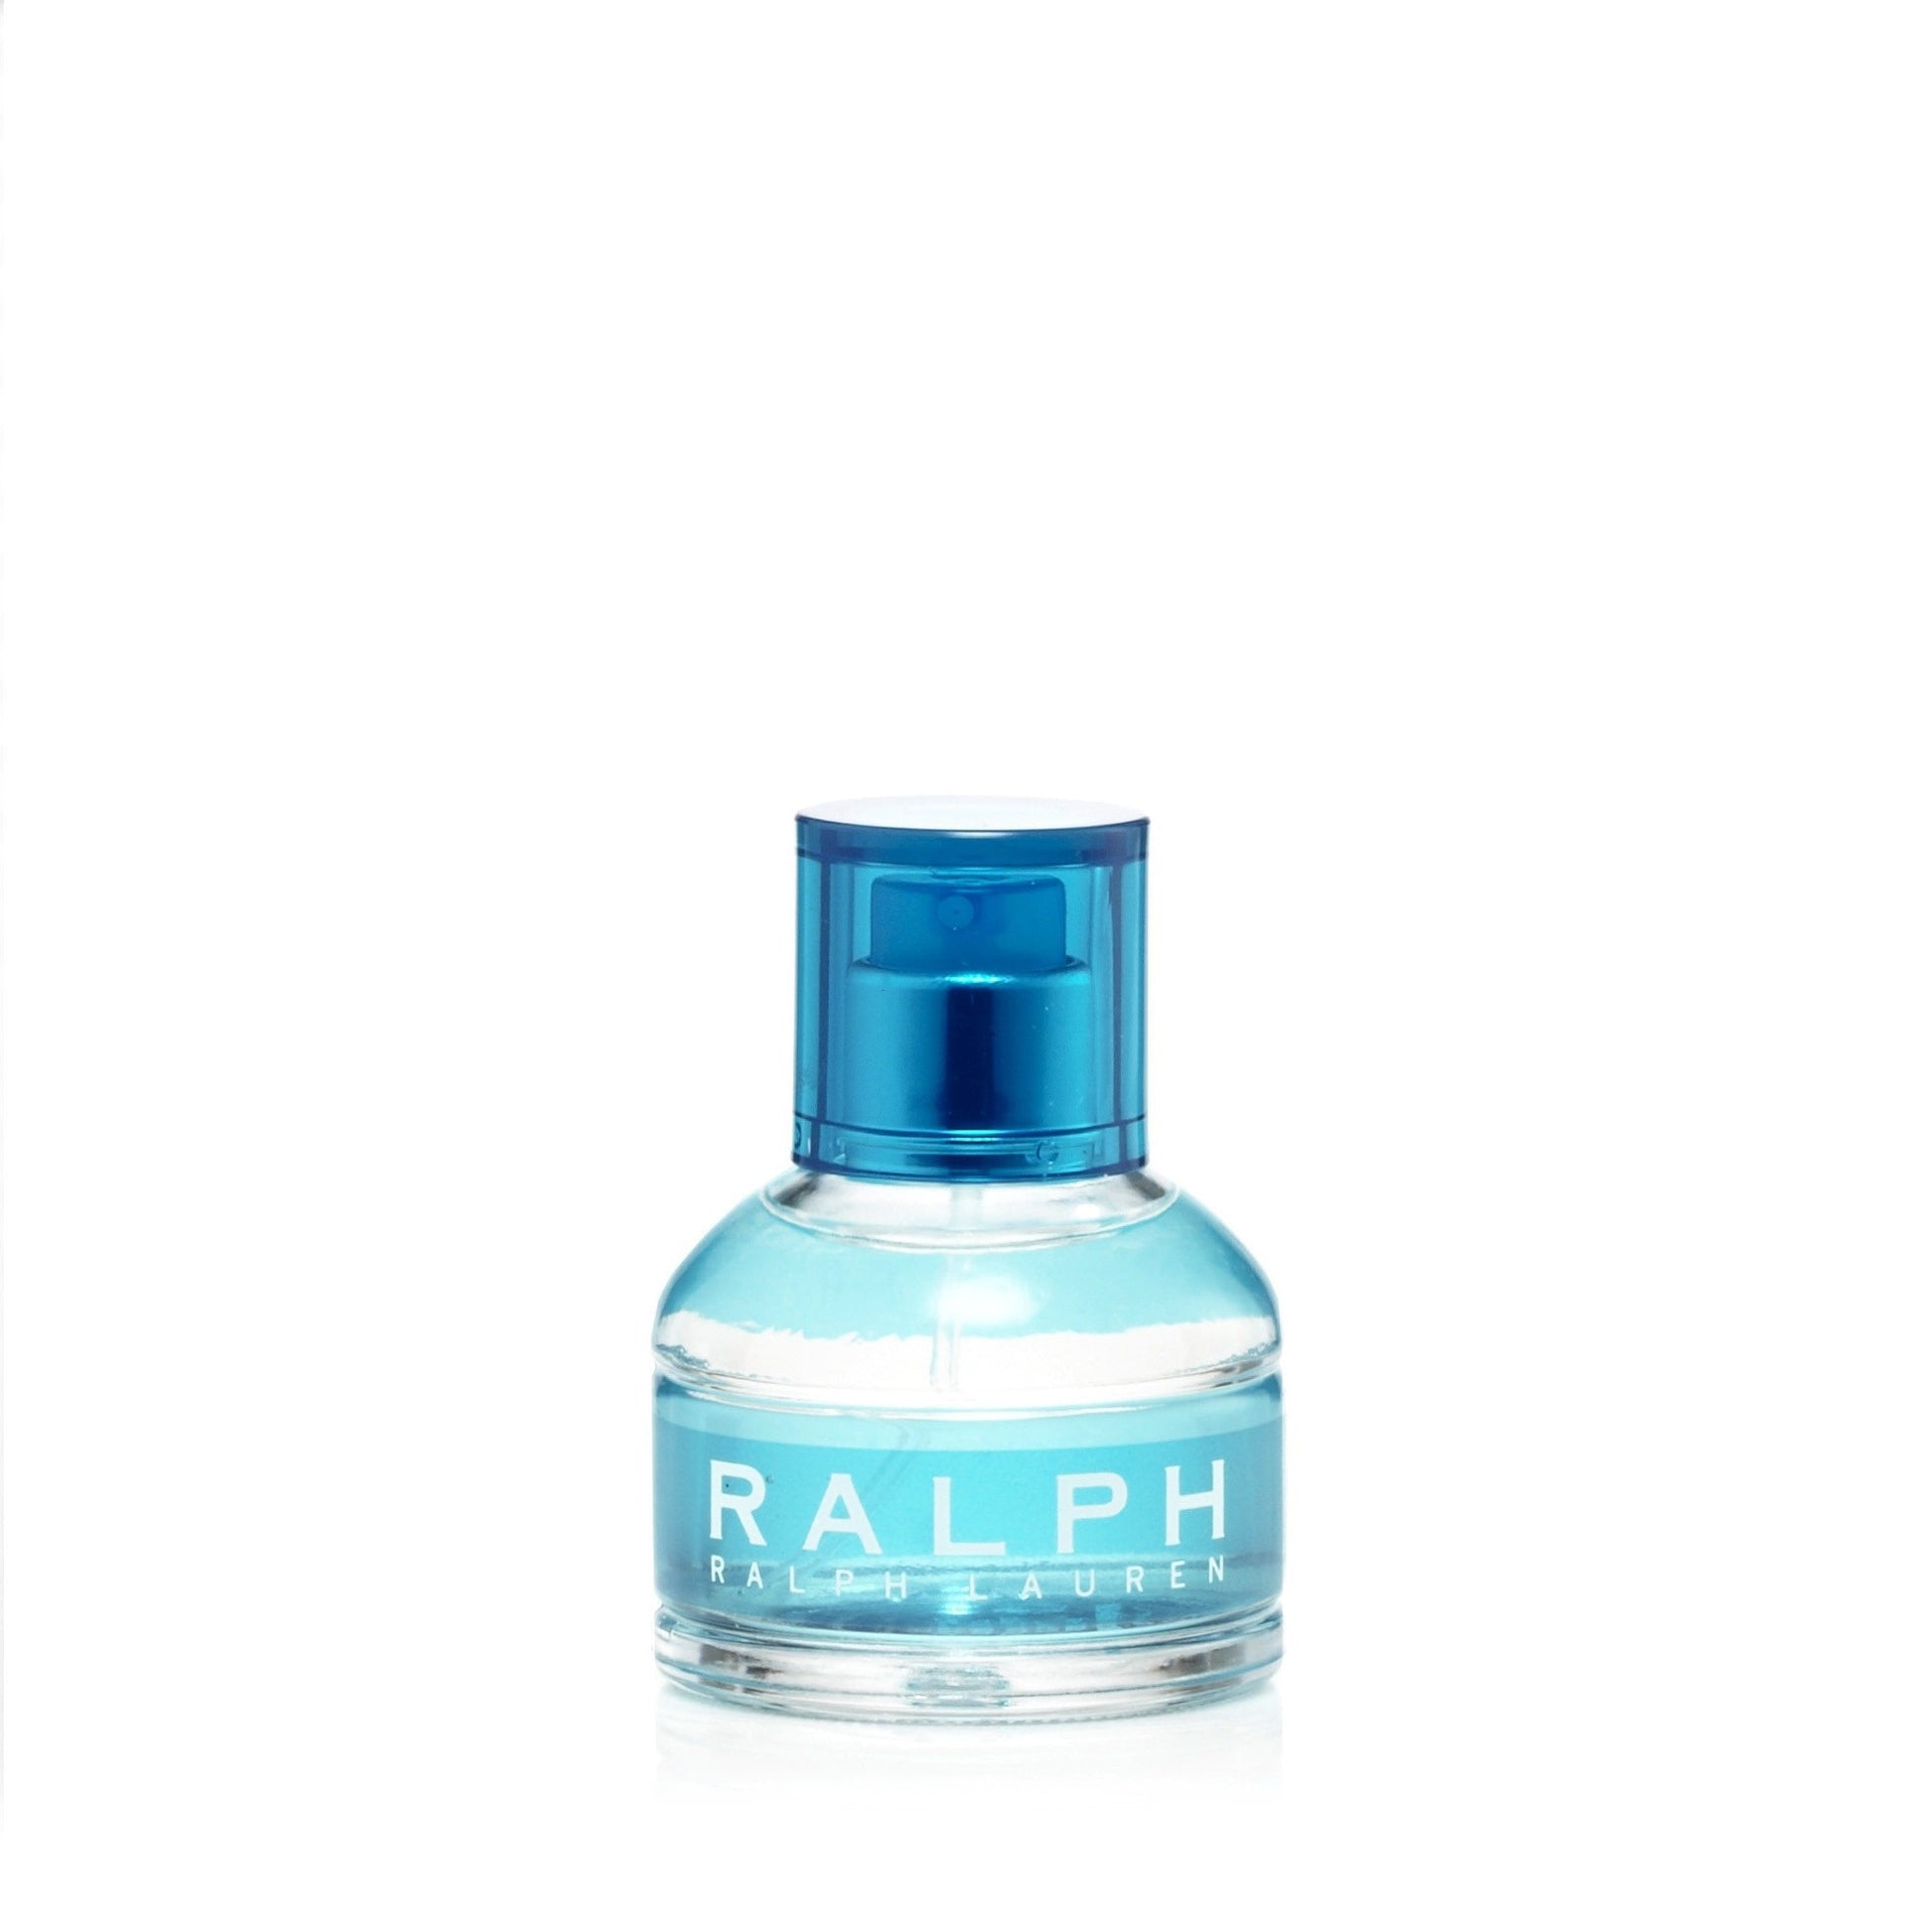 Ralph Lauren Eau de Toilette - 1 fl oz bottle